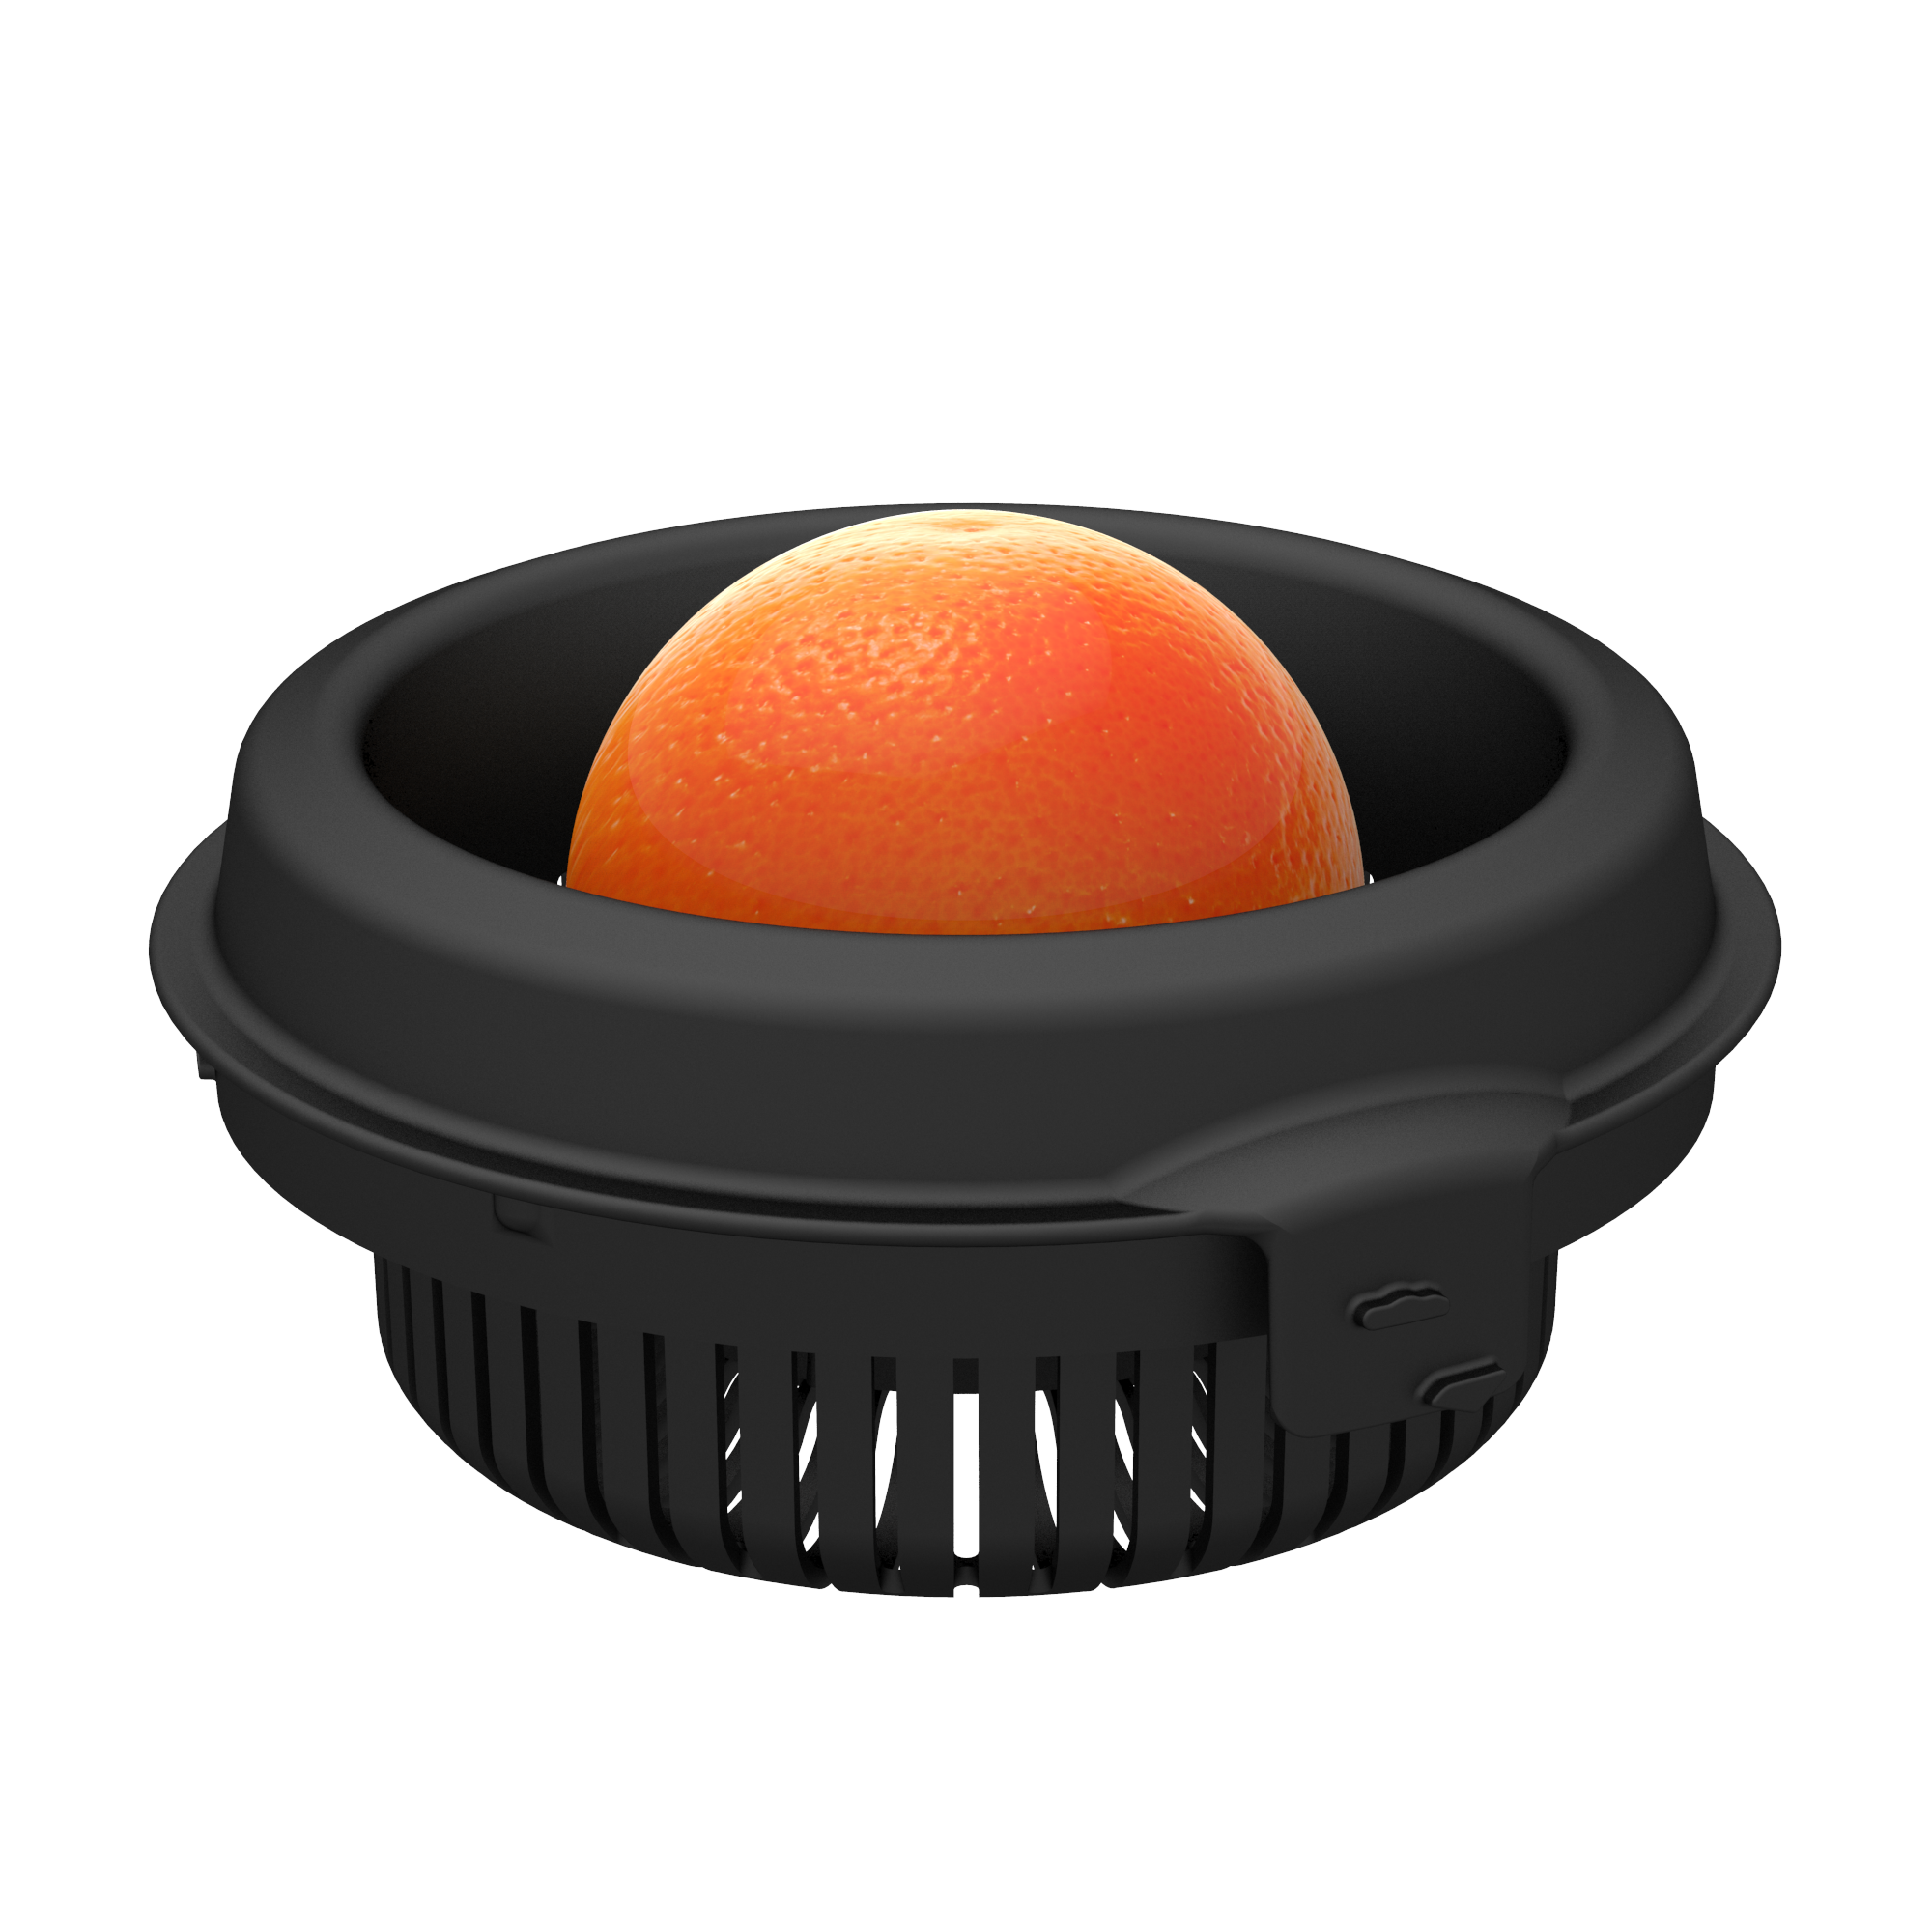 Magimix Citrus Press Kit Product Image 3